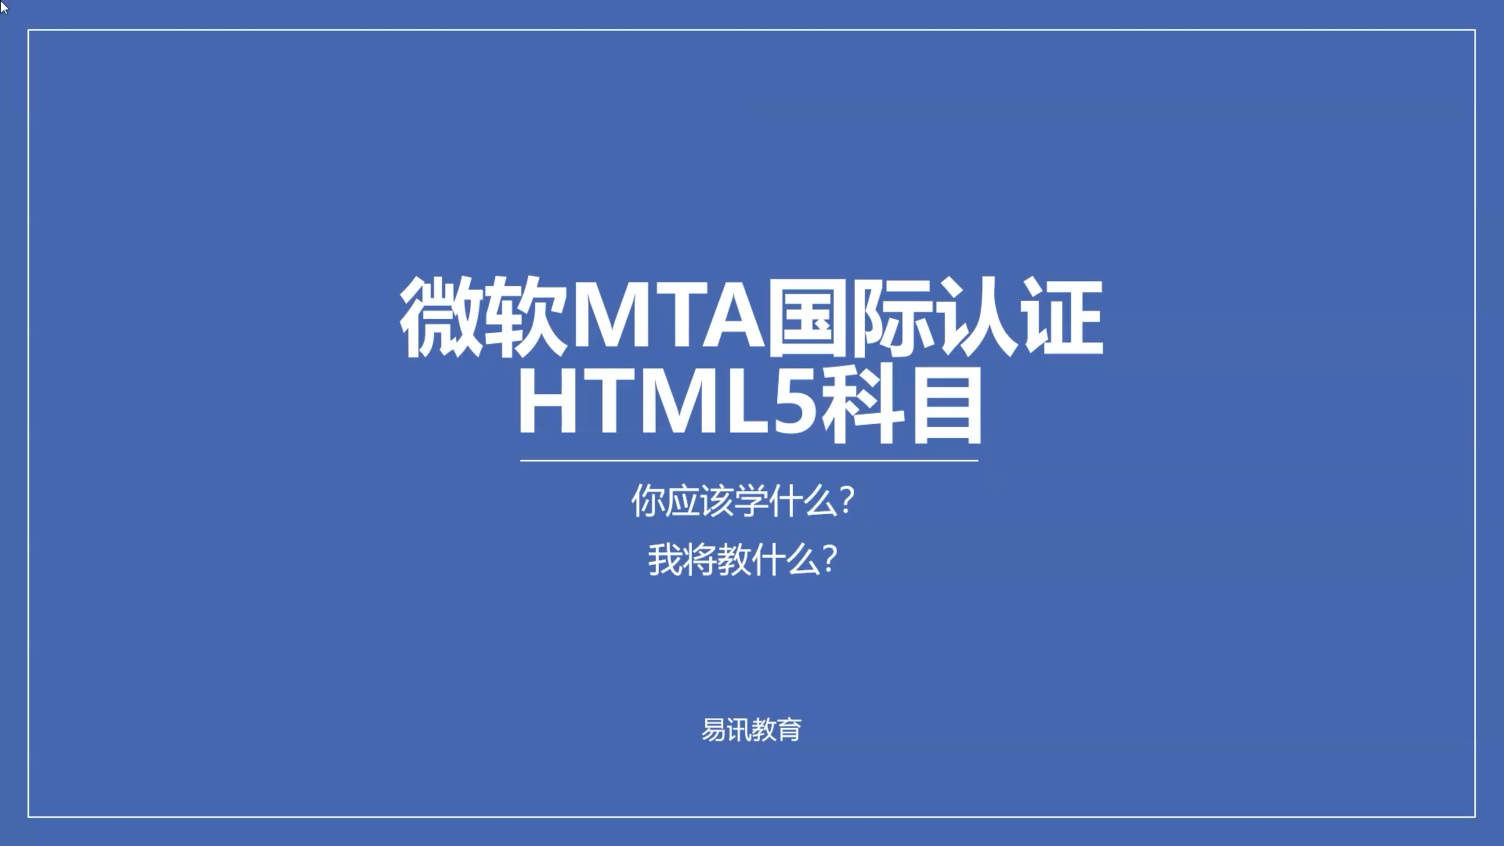 MTA 98-375: HTML5样题解析！